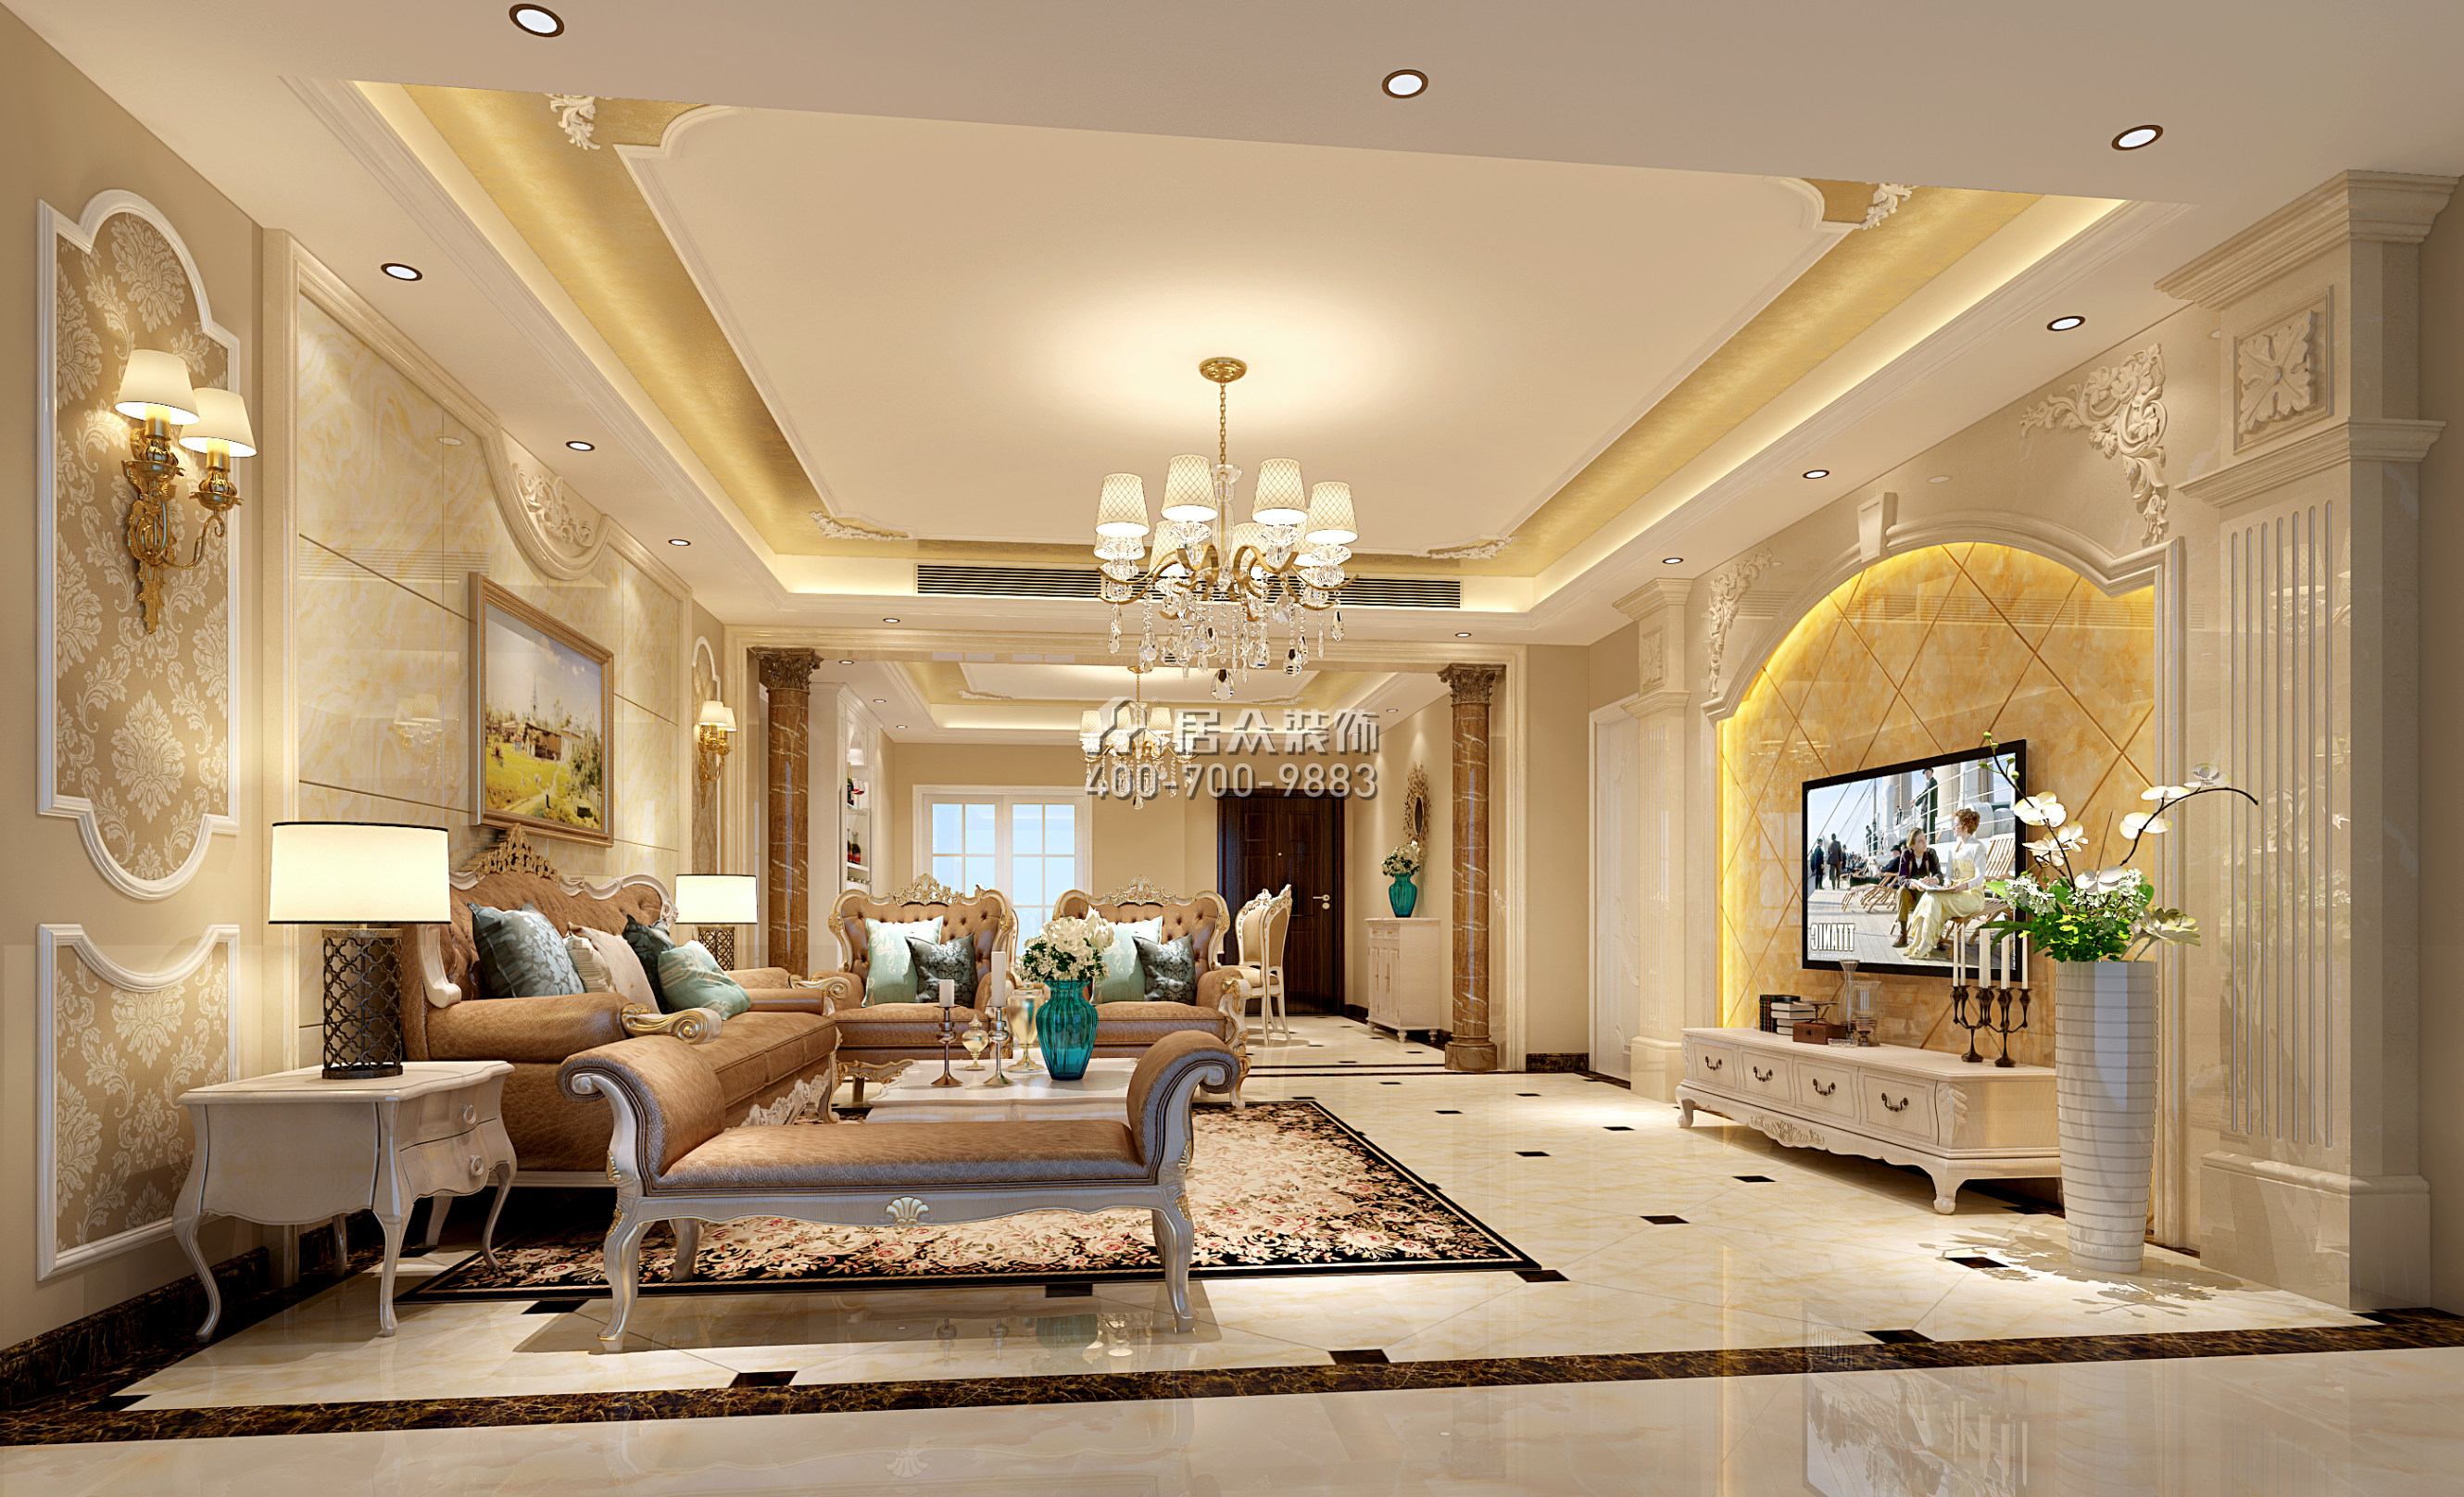 锦绣御园200平方米欧式风格平层户型客厅装修效果图